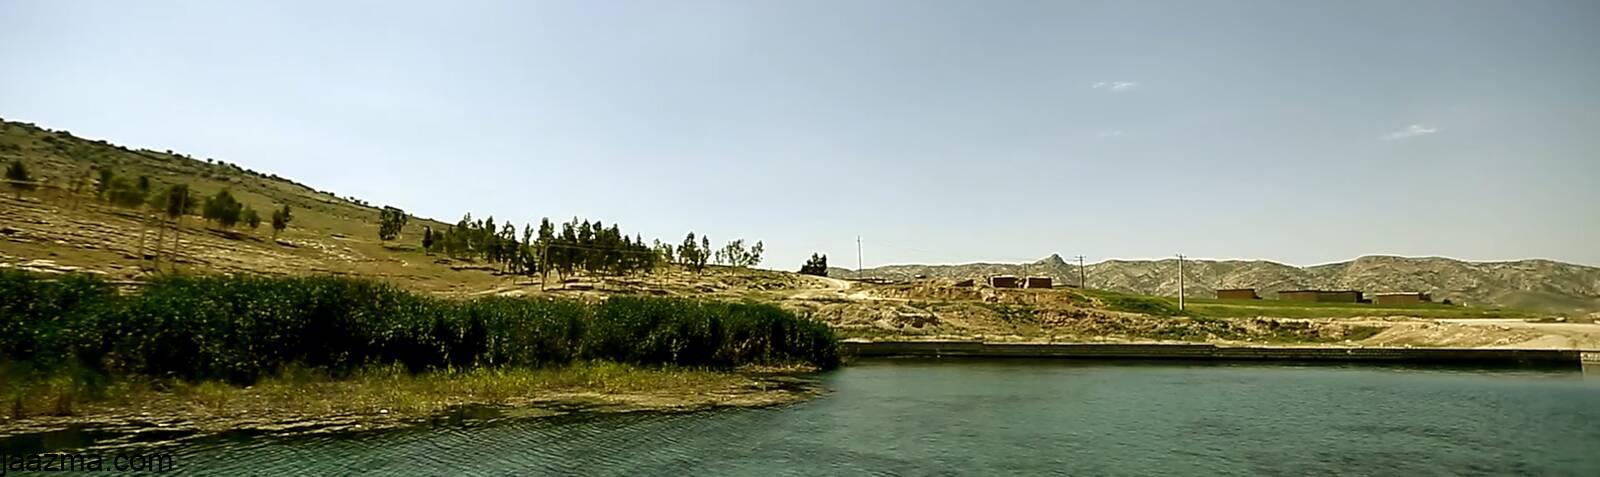 محوطه باستانی سراب مورت